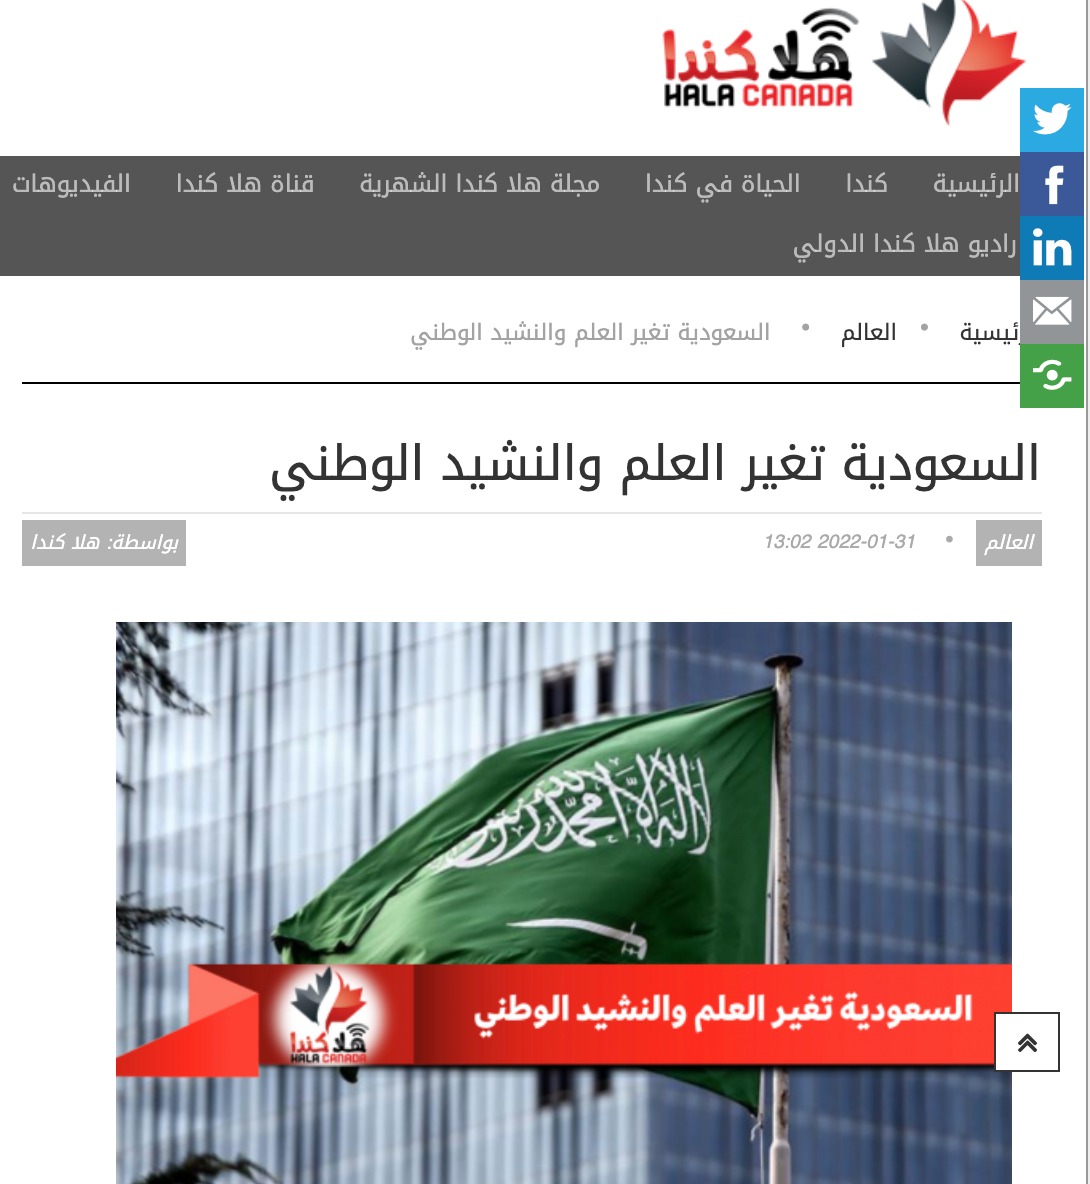 السعودية تغير العلم والنشيد الوطني | عنوان مضلل